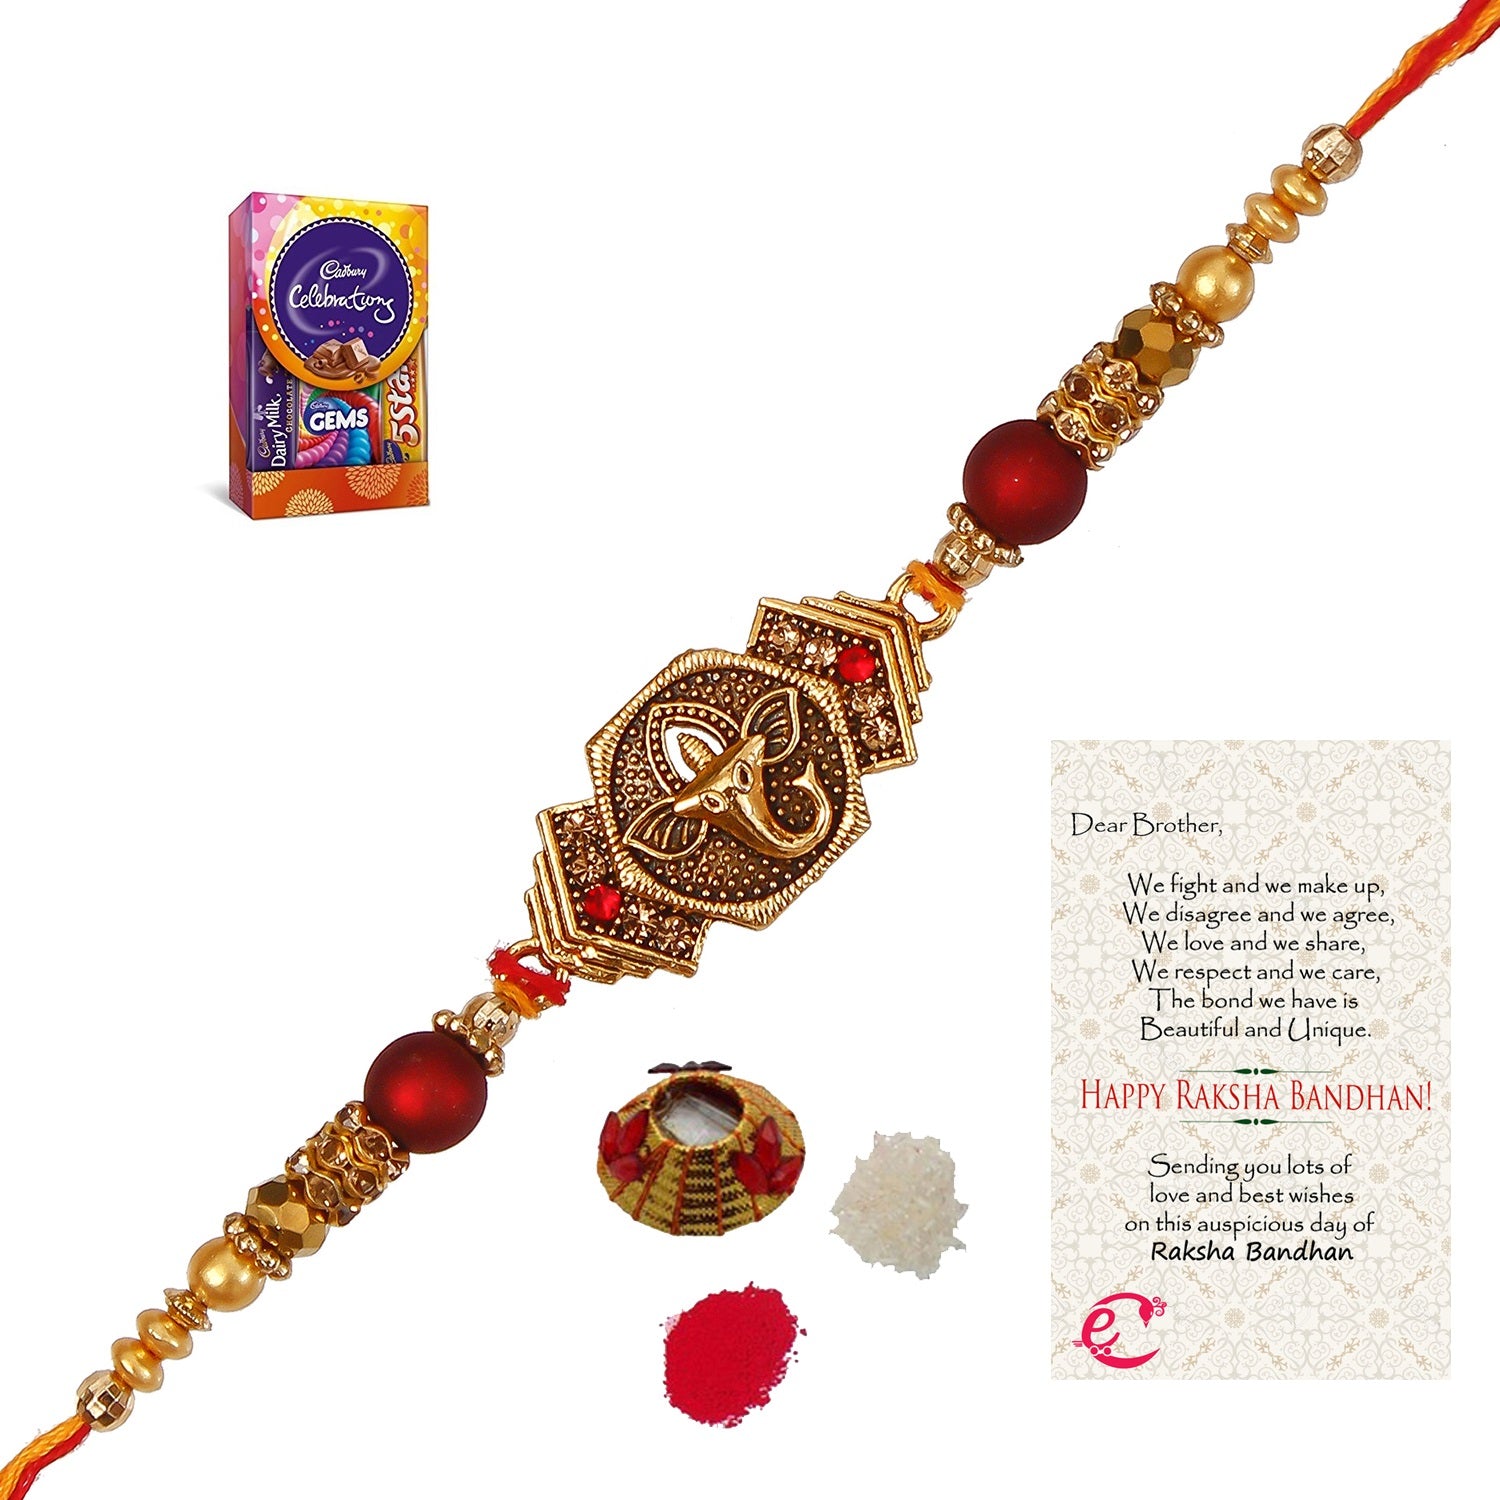 Designer Religious Ganesha Rakhi with Cadbury Celebrations Gift Pack of 5 Assorted Chocolates and Roli Tikka Matki, Best Wishes Greeting Card